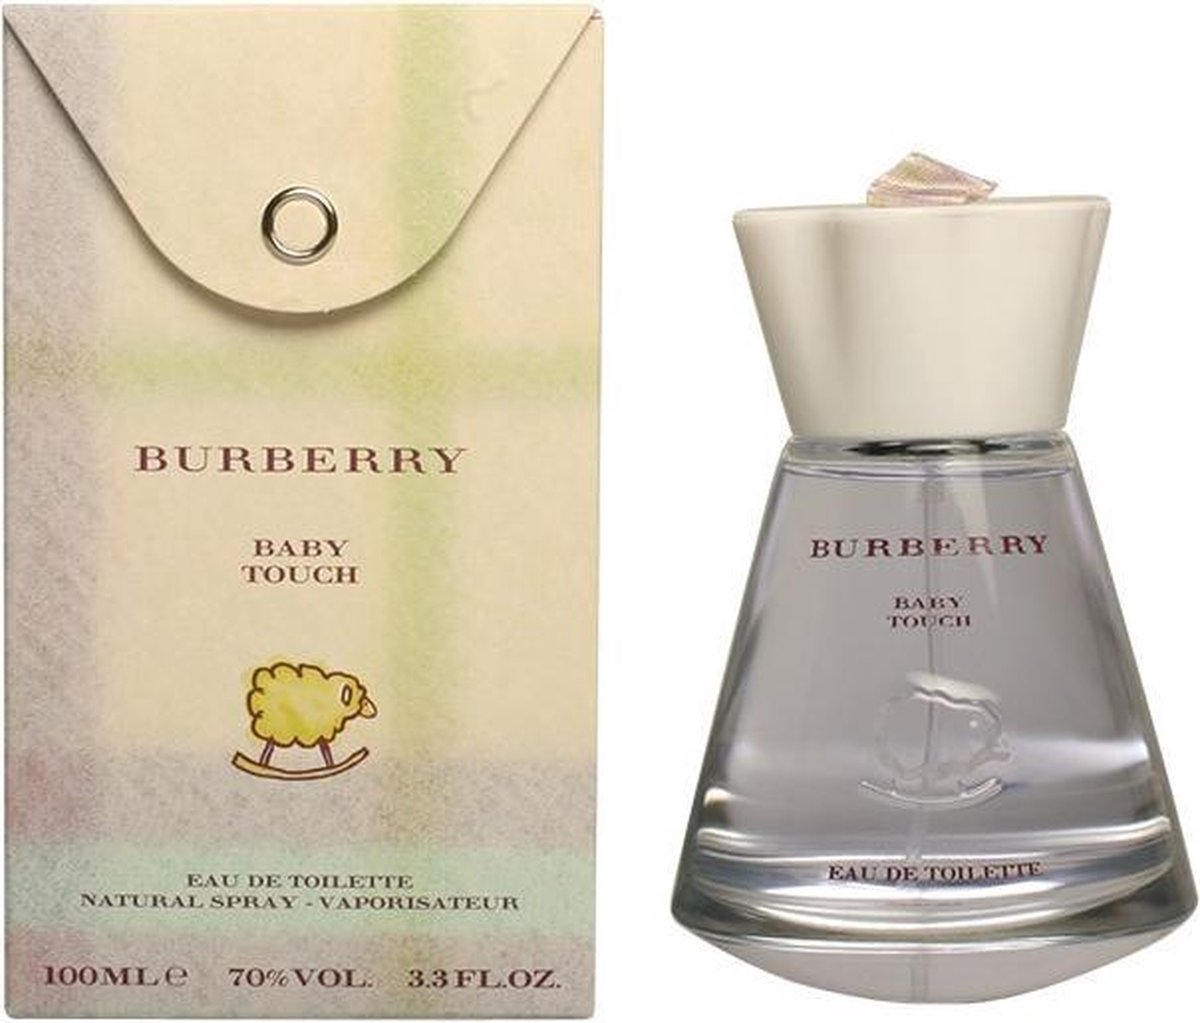 burberry baby parfum,(categoryid=96)Up to 65% OFF,emregurses.com